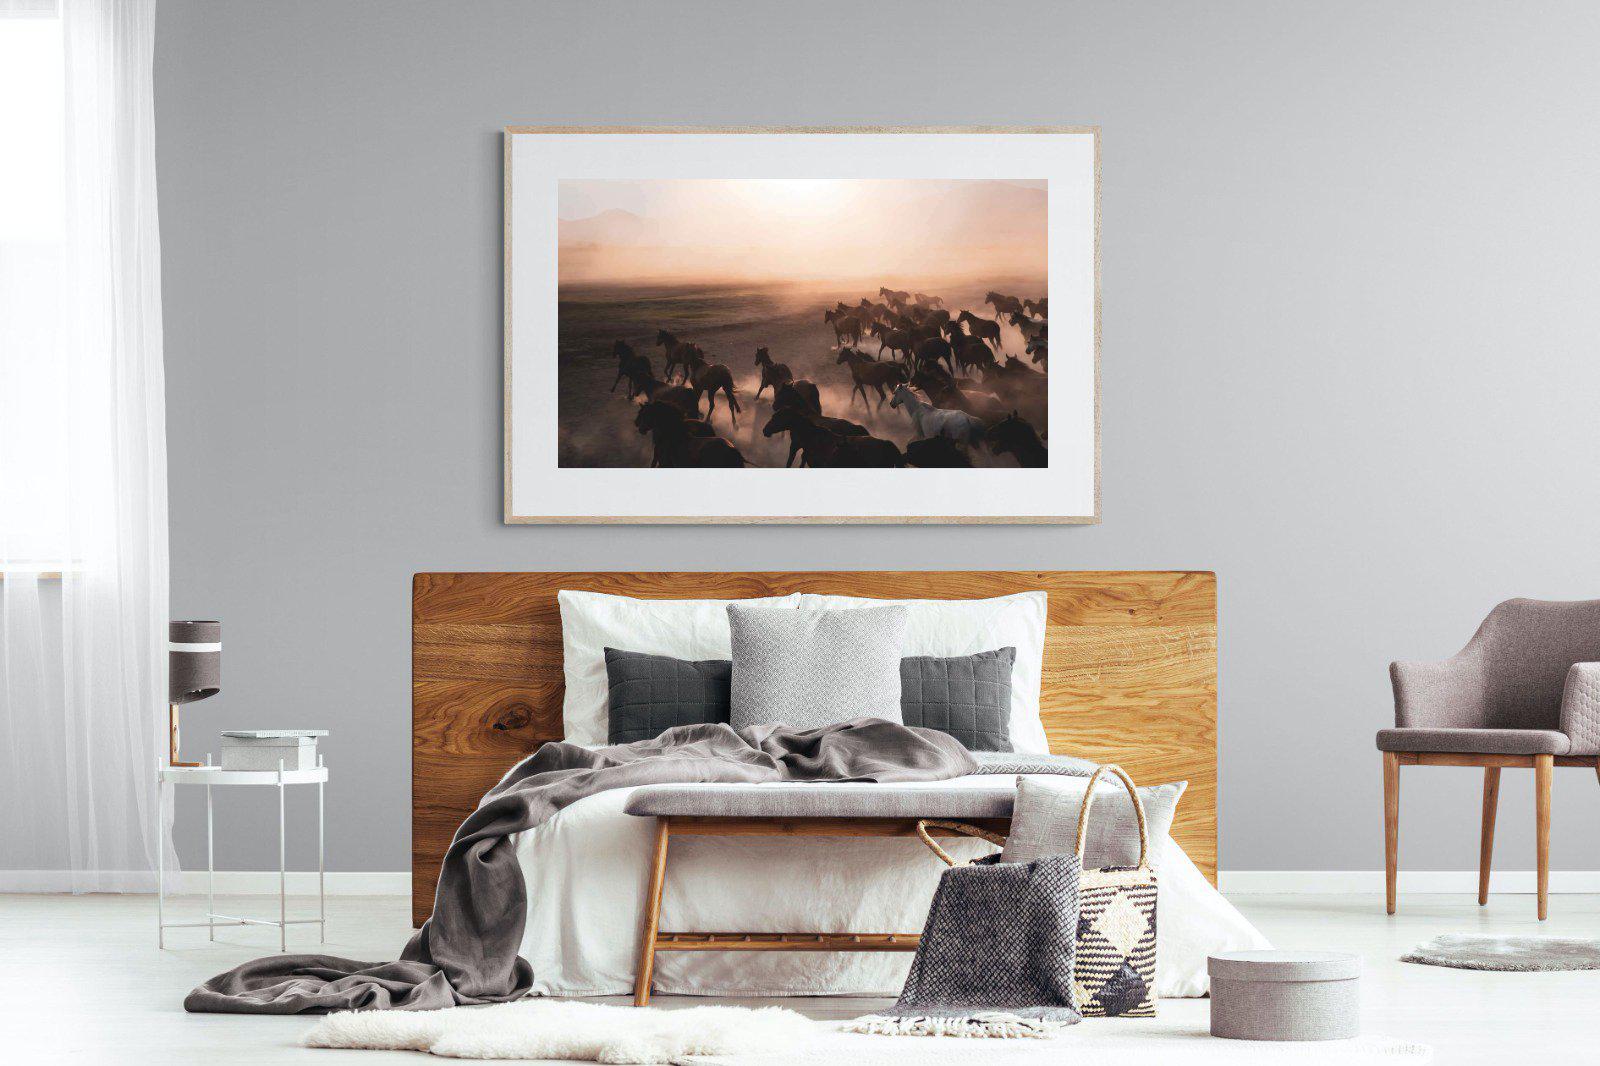 Gallop-Wall_Art-150 x 100cm-Framed Print-Wood-Pixalot